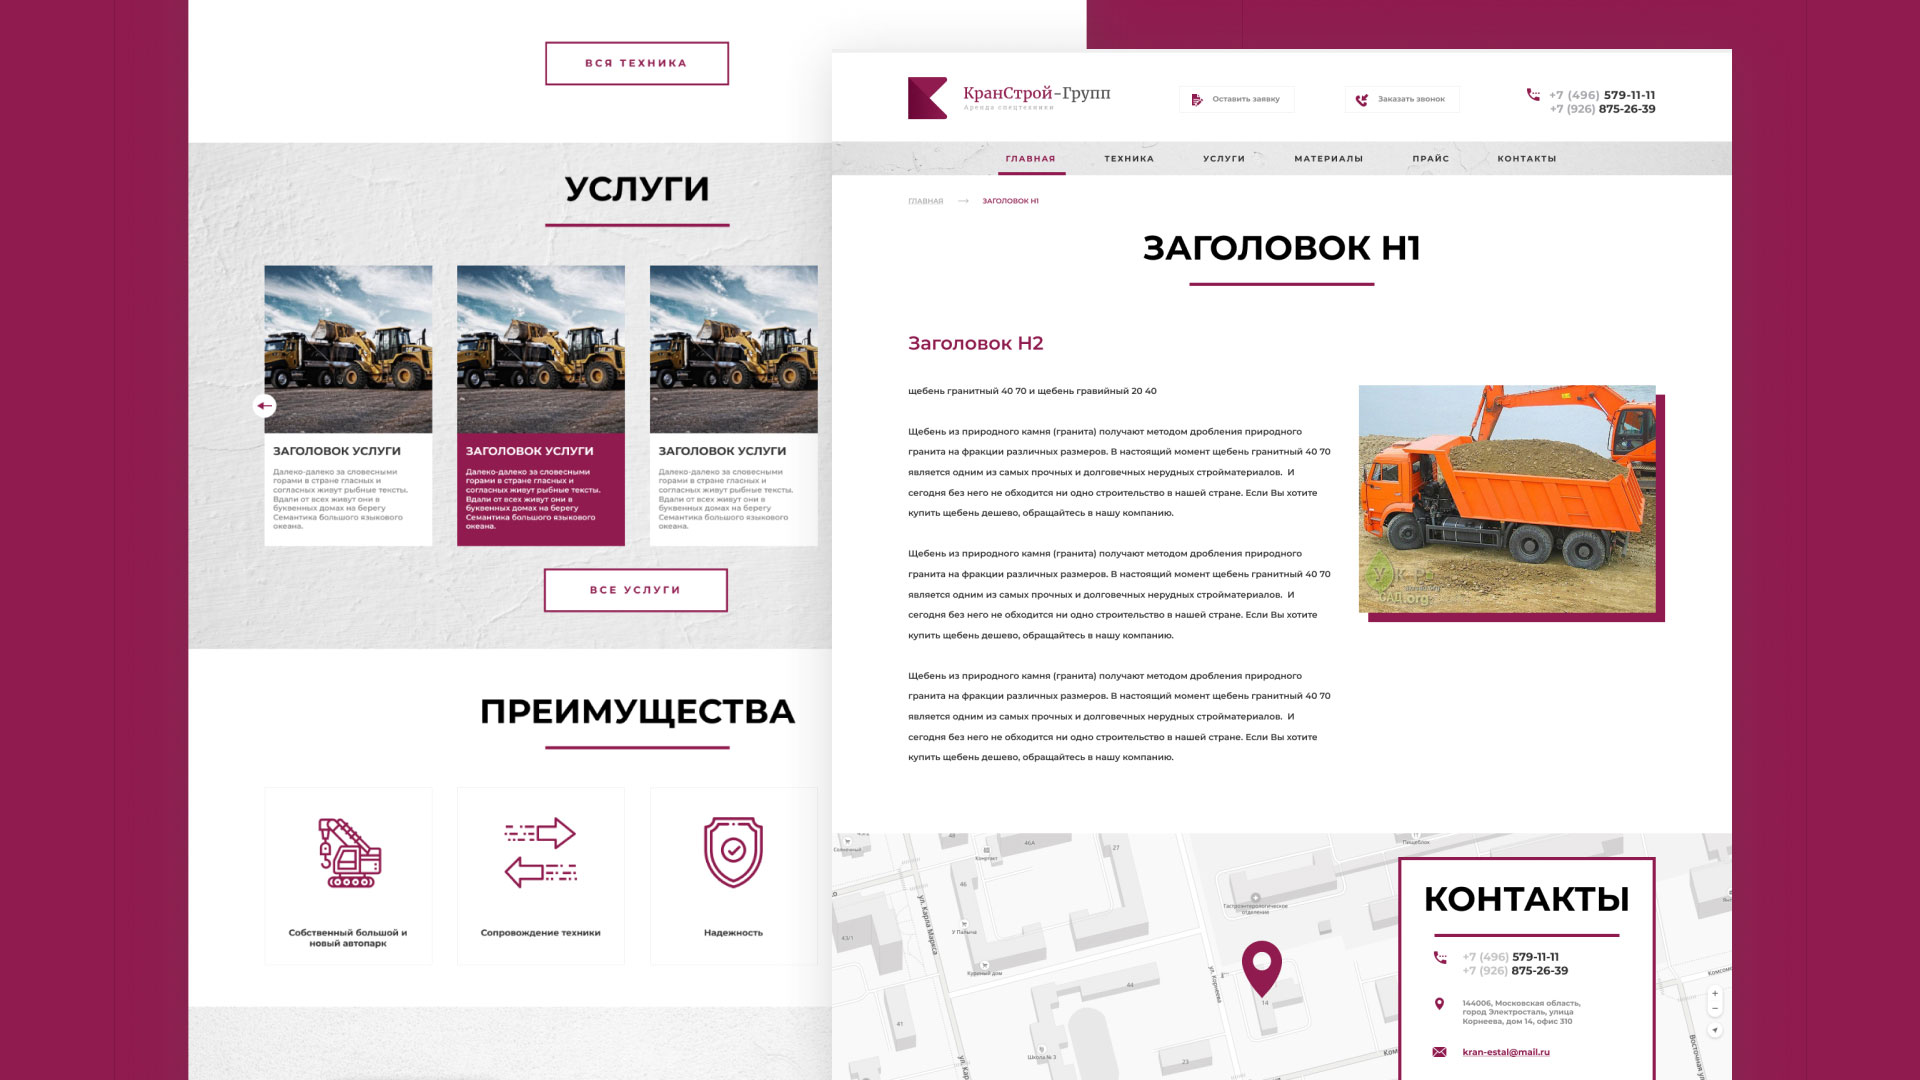 Разработка сайта компании «КранСтрой-Групп» по аренде спецтехники в 